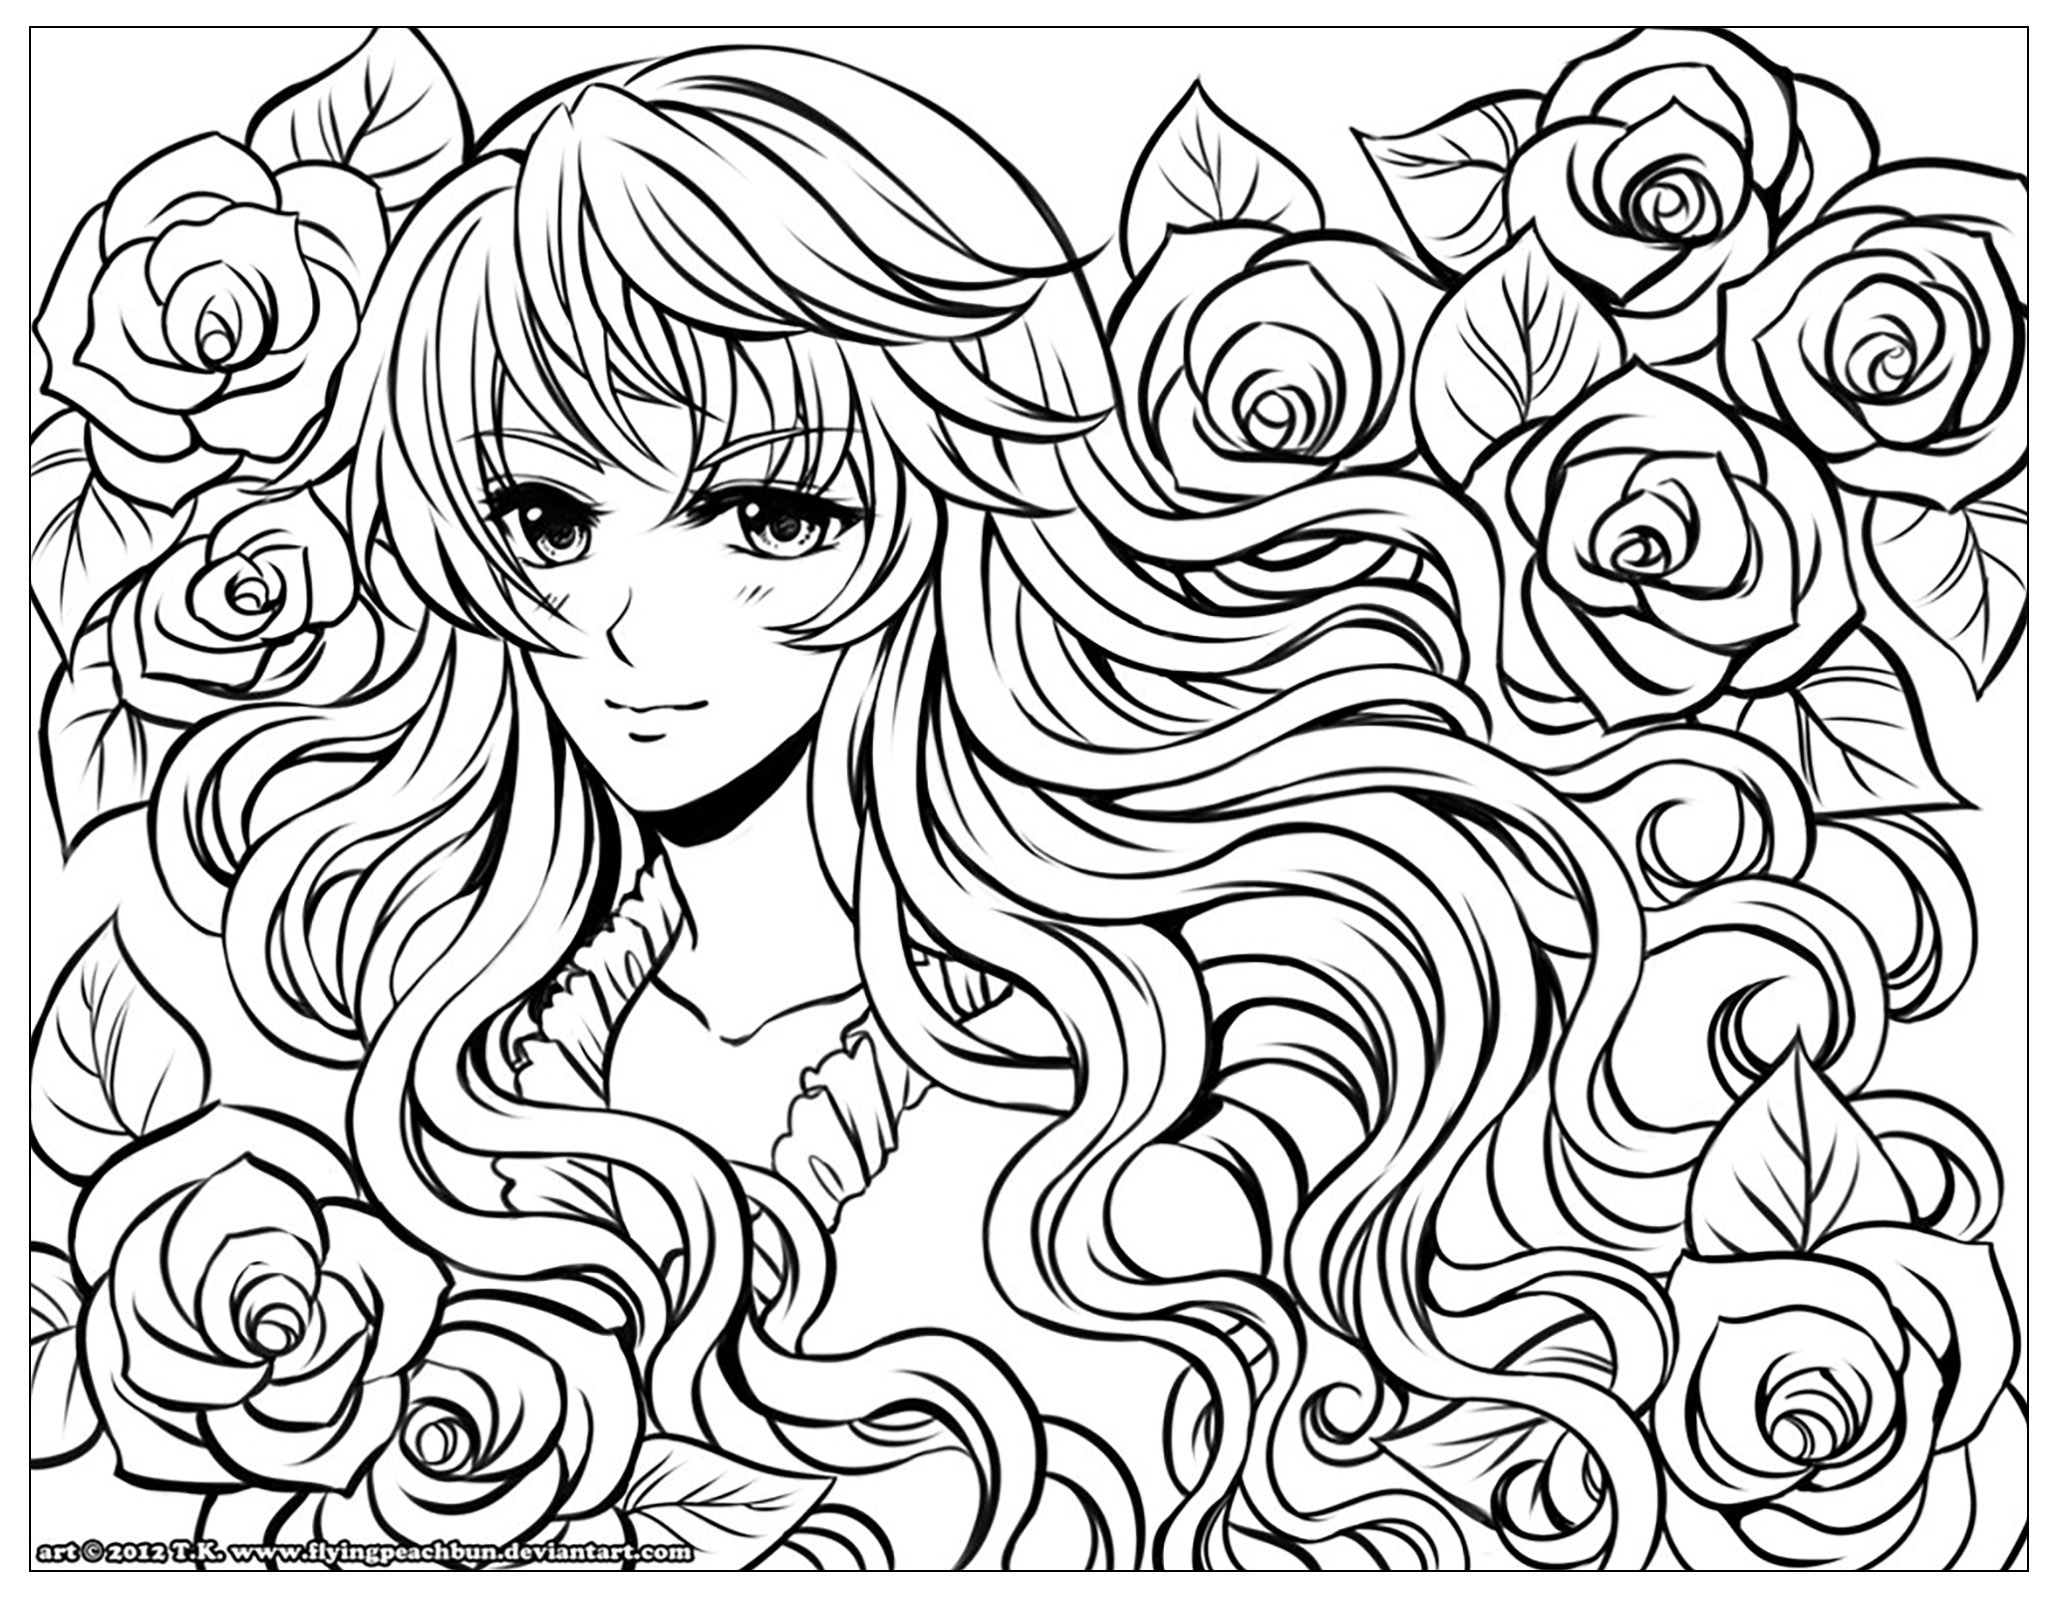 Personnage Manga Avec Fleurs Dans Ses Cheveux Mangas